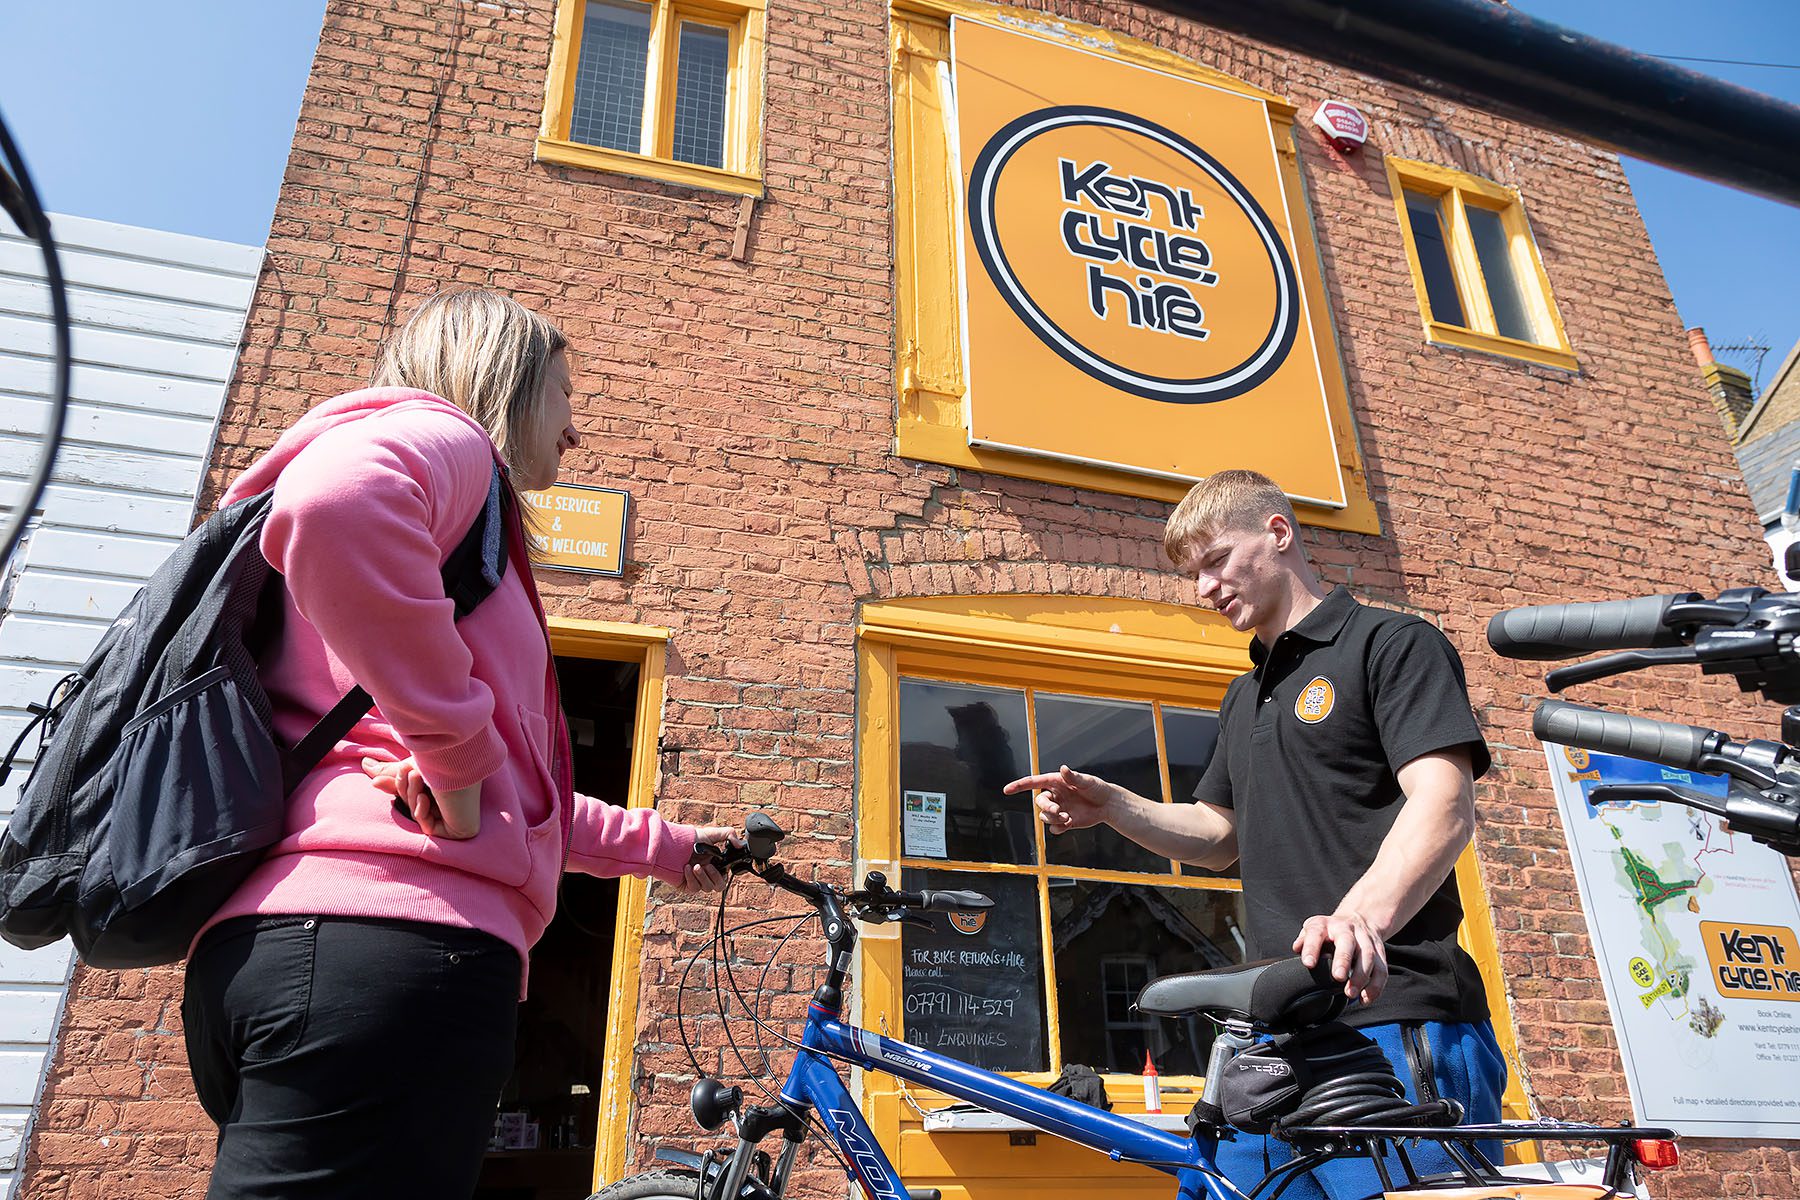 cycle hire employee showing women bike to hire